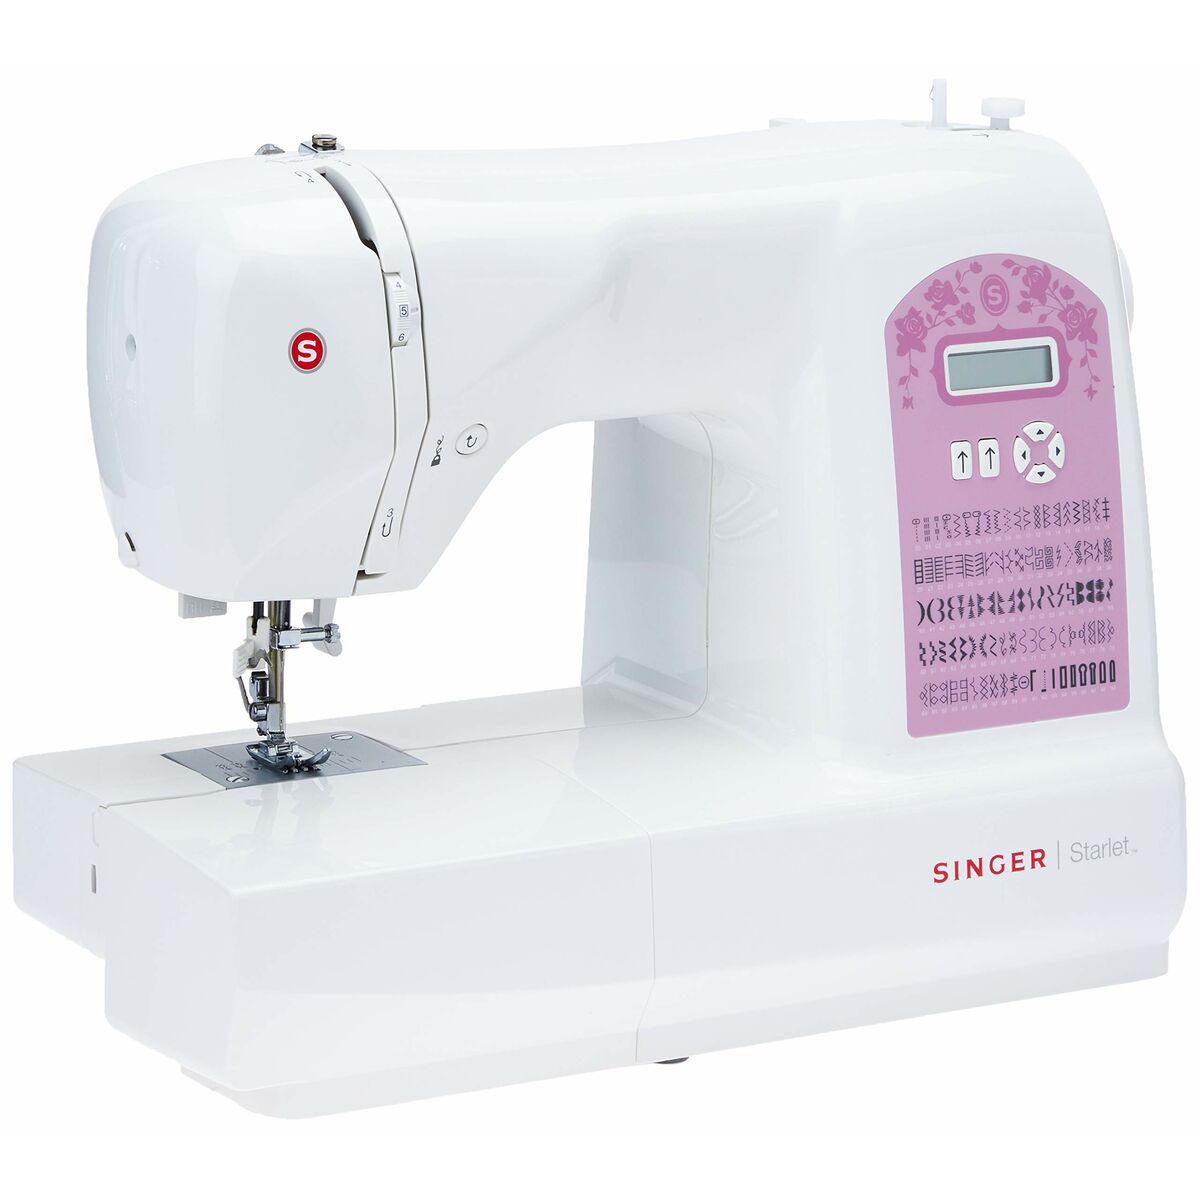 Alfa Next 830+ Máquina de coser